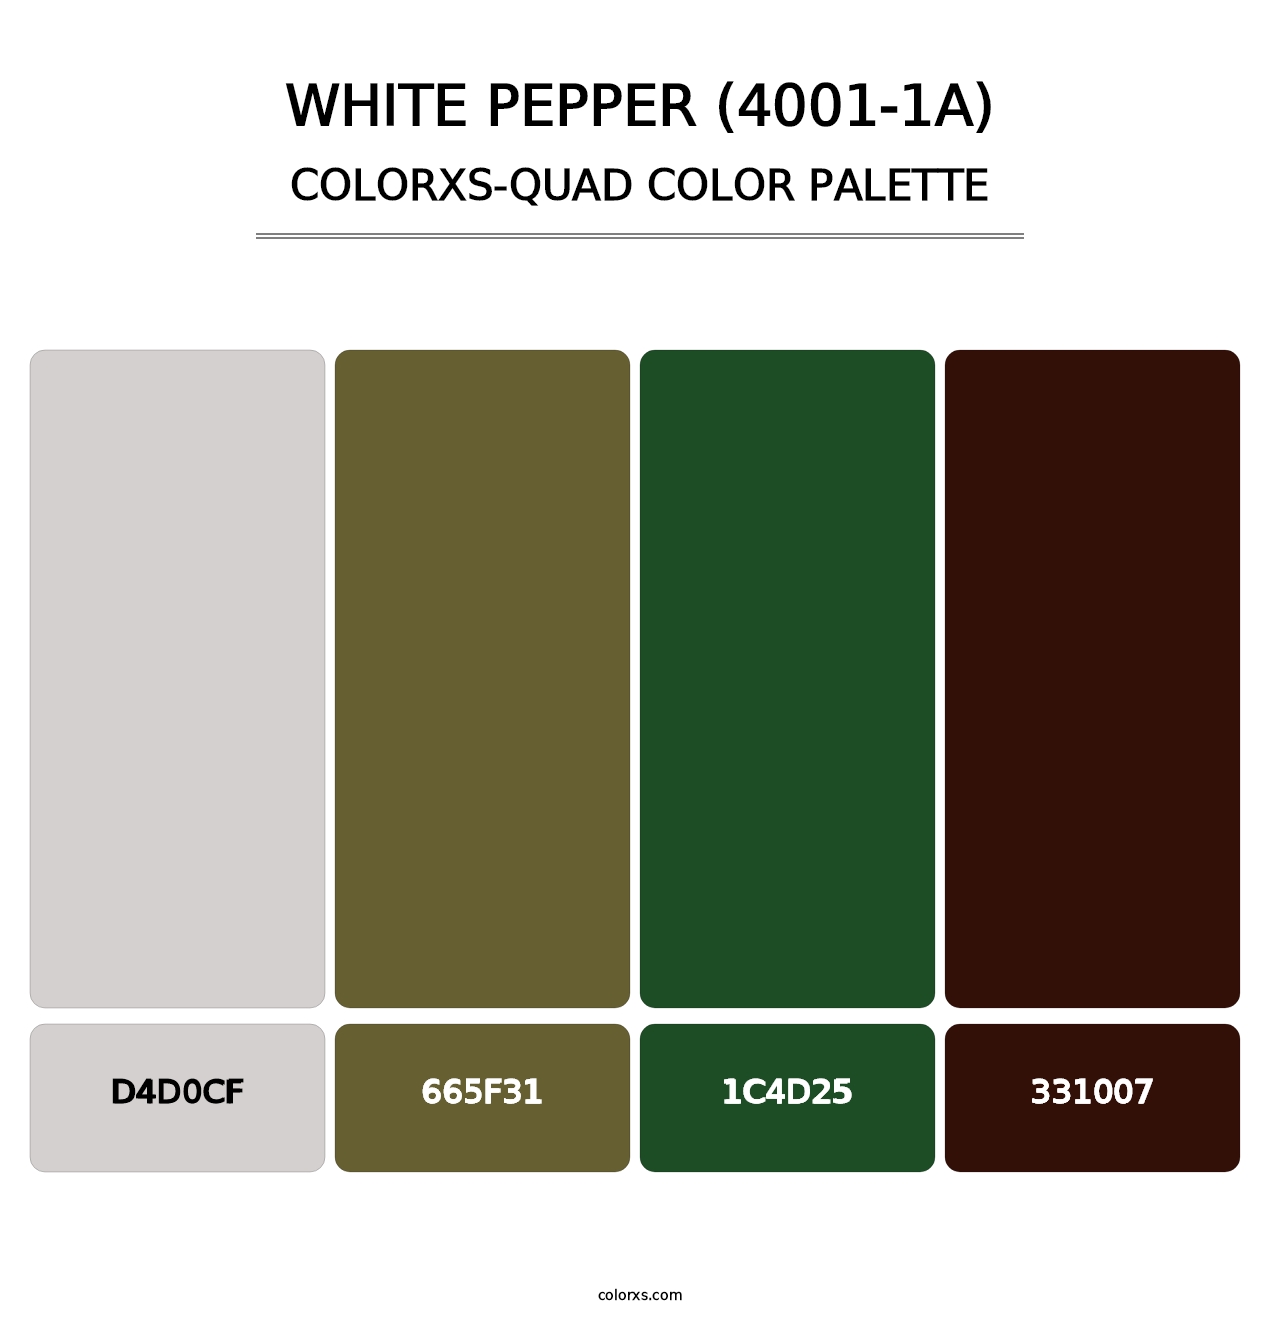 White Pepper (4001-1A) - Colorxs Quad Palette